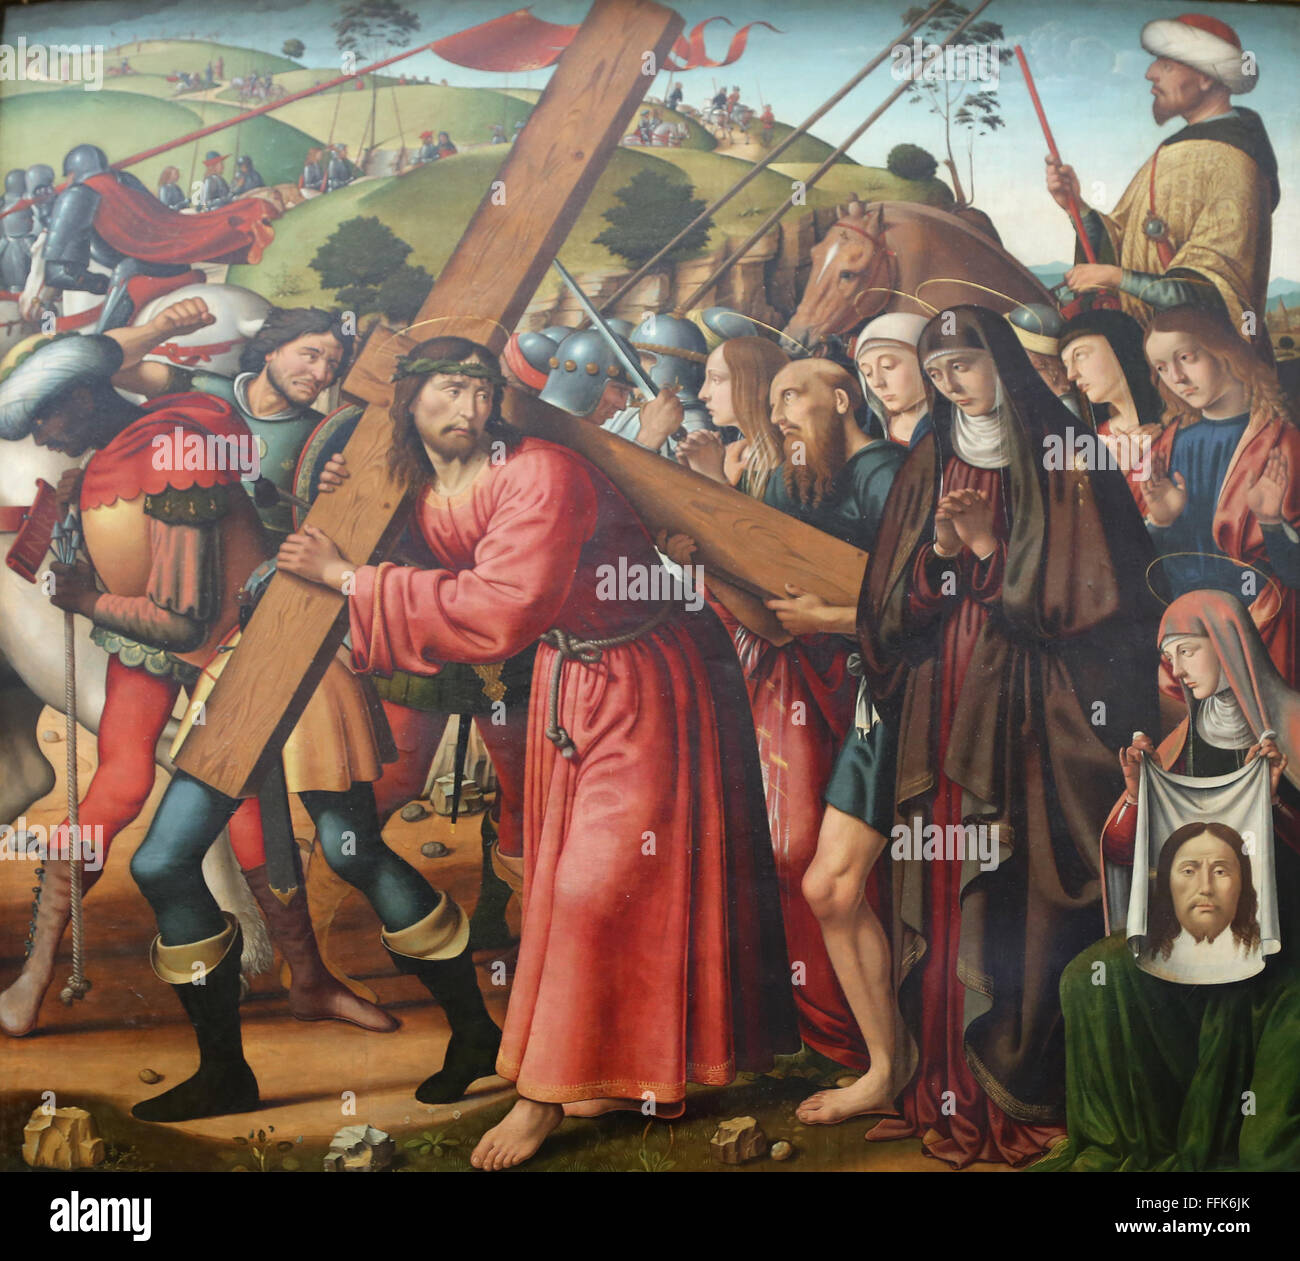 Le Christ portant la croix, 1466. Par le peintre italien Biagio d'Antonio (1446-1508). Renaissance. Musée du Louvre. Paris. La France. Banque D'Images